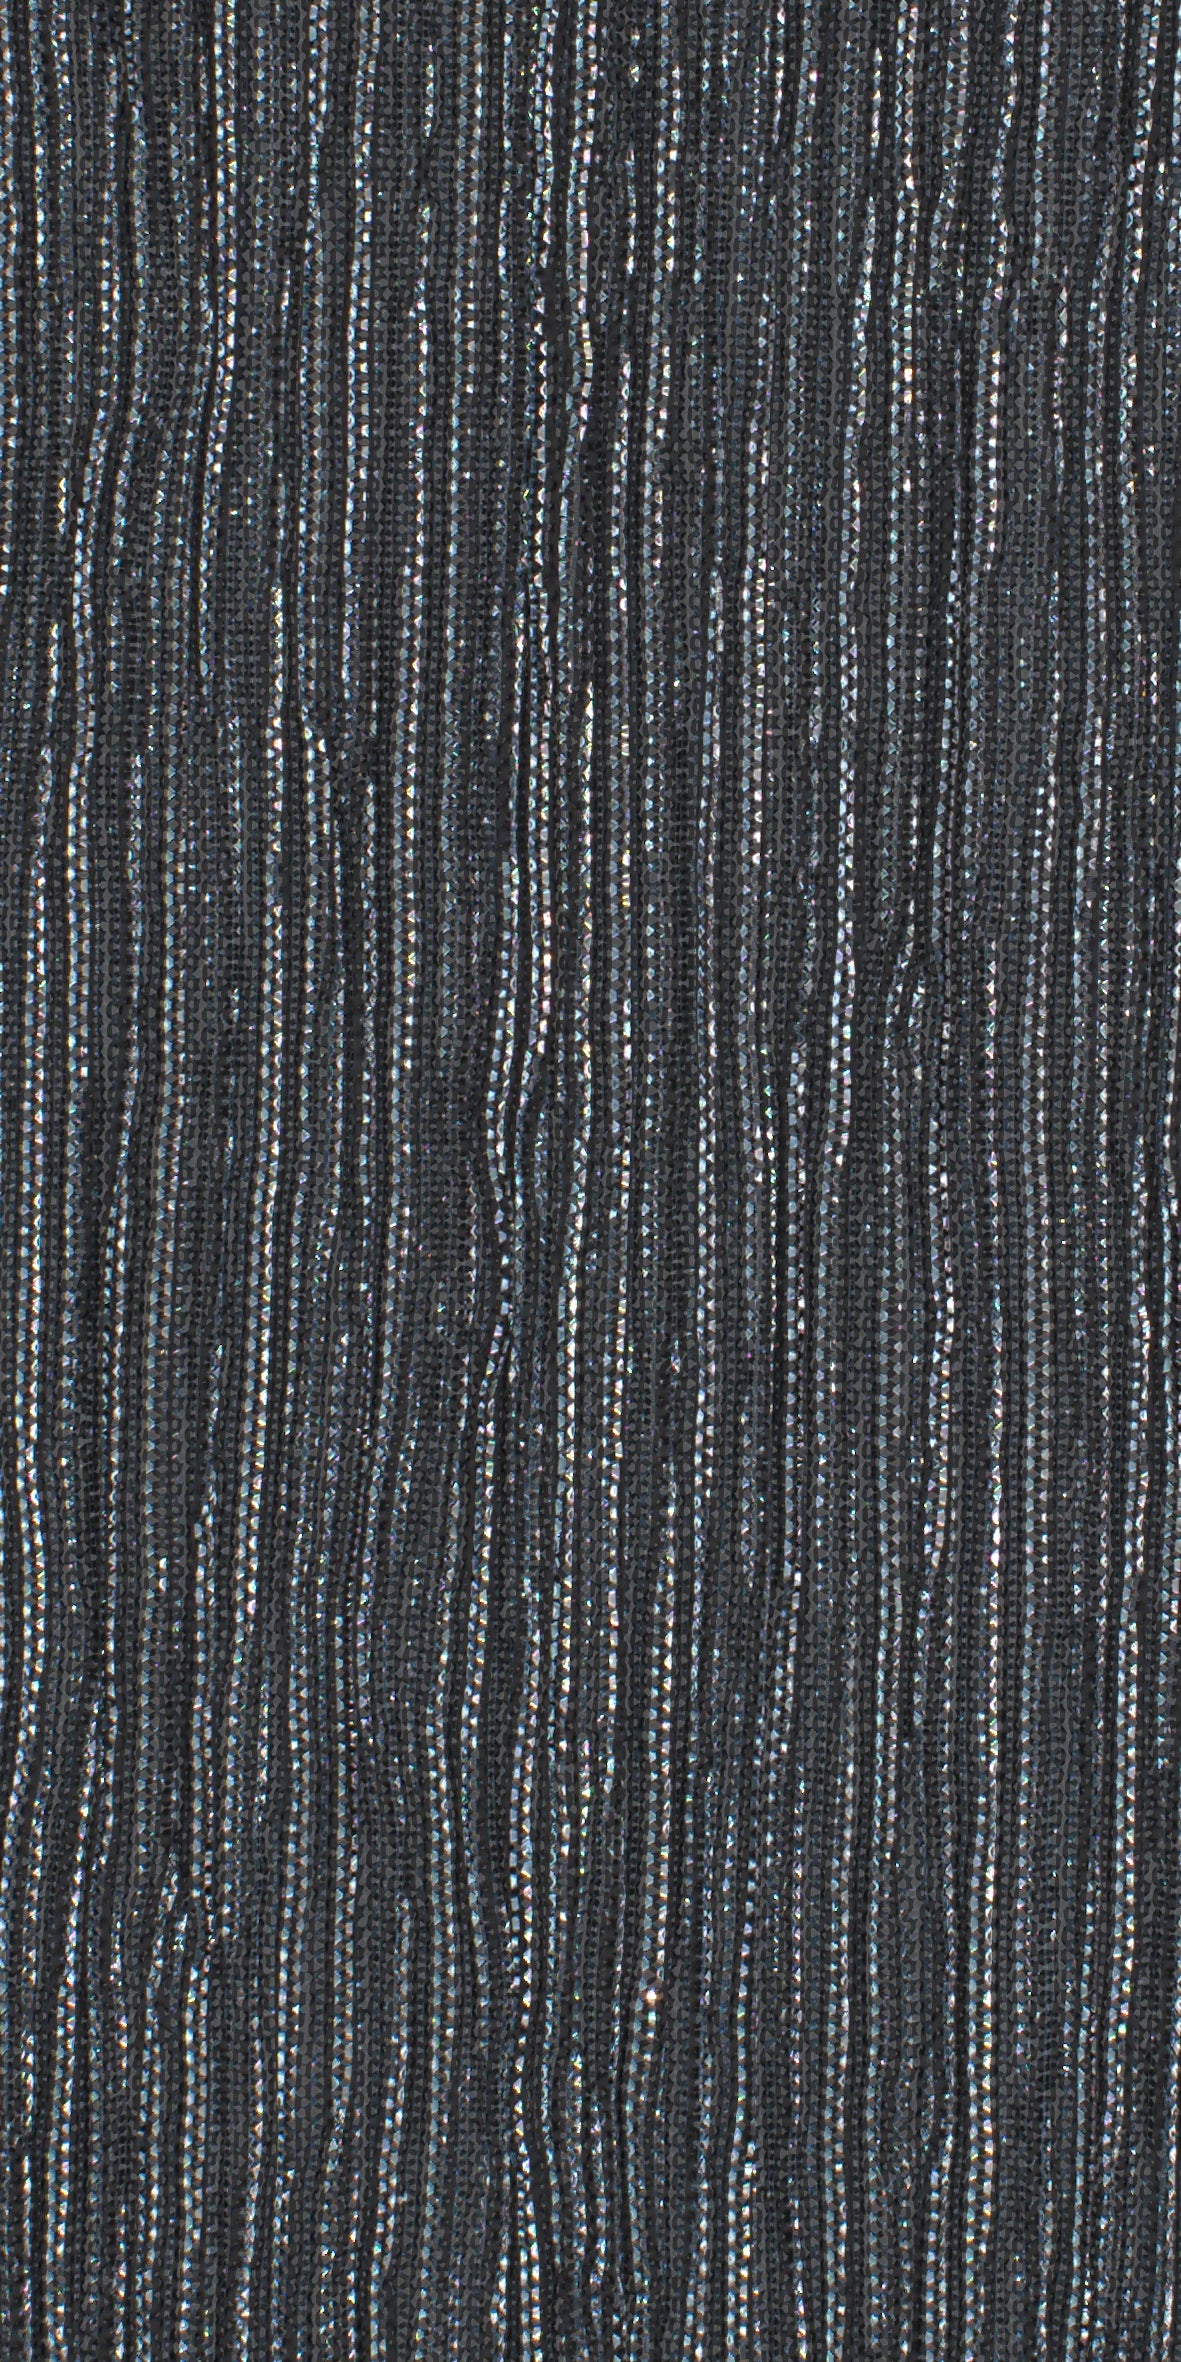 12006-09 Silver Black Metallic Pleat Plain Dyed Blend 126g/yd 56" black blend knit metallic plain dyed pleat ppl new silver Metallic, Pleat - knit fabric - woven fabric - fabric company - fabric wholesale - fabric b2b - fabric factory - high quality fabric - hong kong fabric - fabric hk - acetate fabric - cotton fabric - linen fabric - metallic fabric - nylon fabric - polyester fabric - spandex fabric - chun wing hing - cwh hk - fabric worldwide ship - 針織布 - 梳織布 - 布料公司- 布料批發 - 香港布料 - 秦榮興